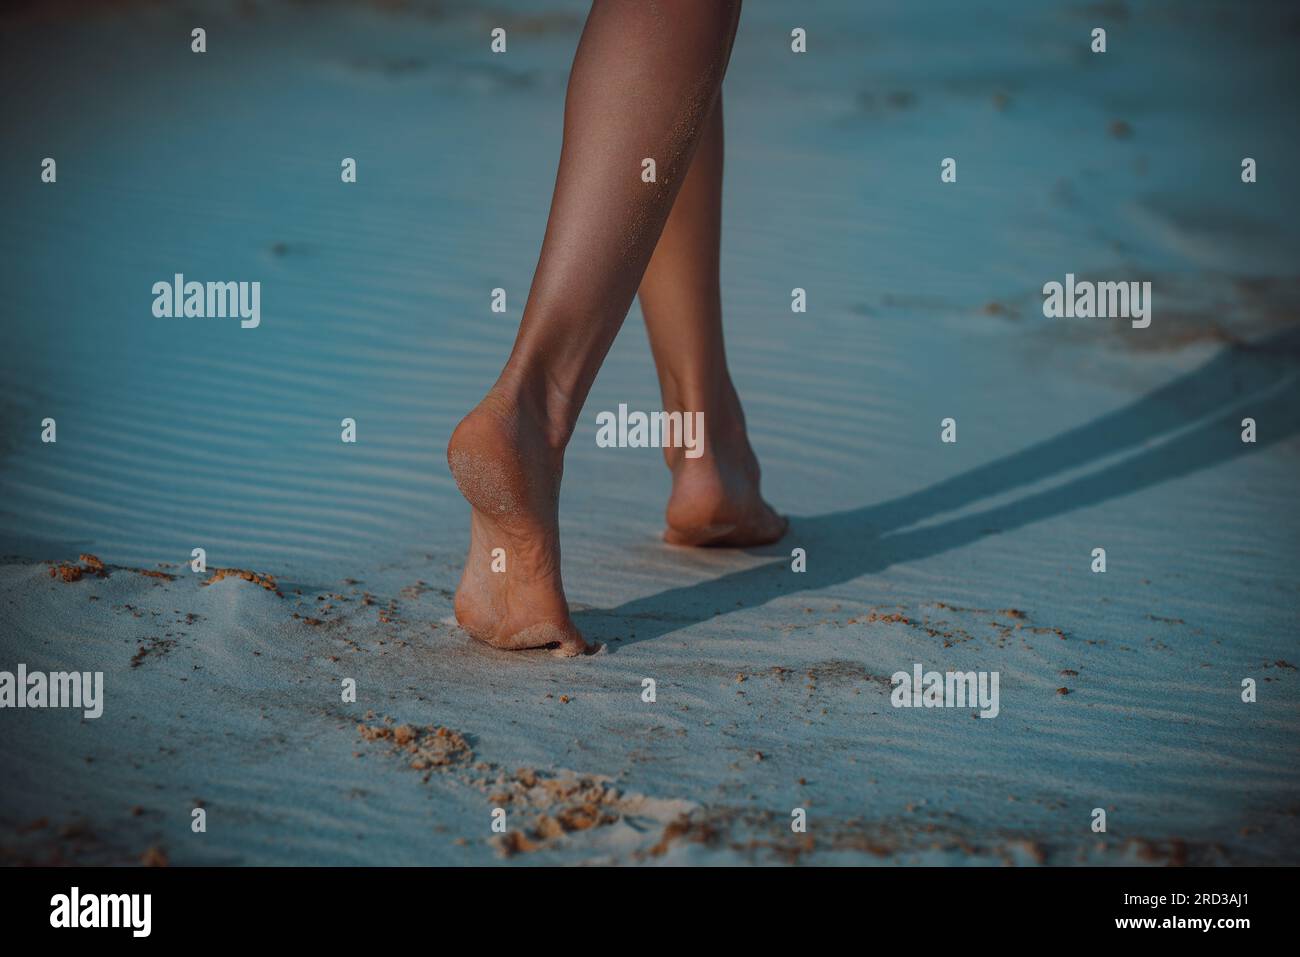 La giovane donna cammina a piedi scalzi sulla sabbia la sera Foto Stock